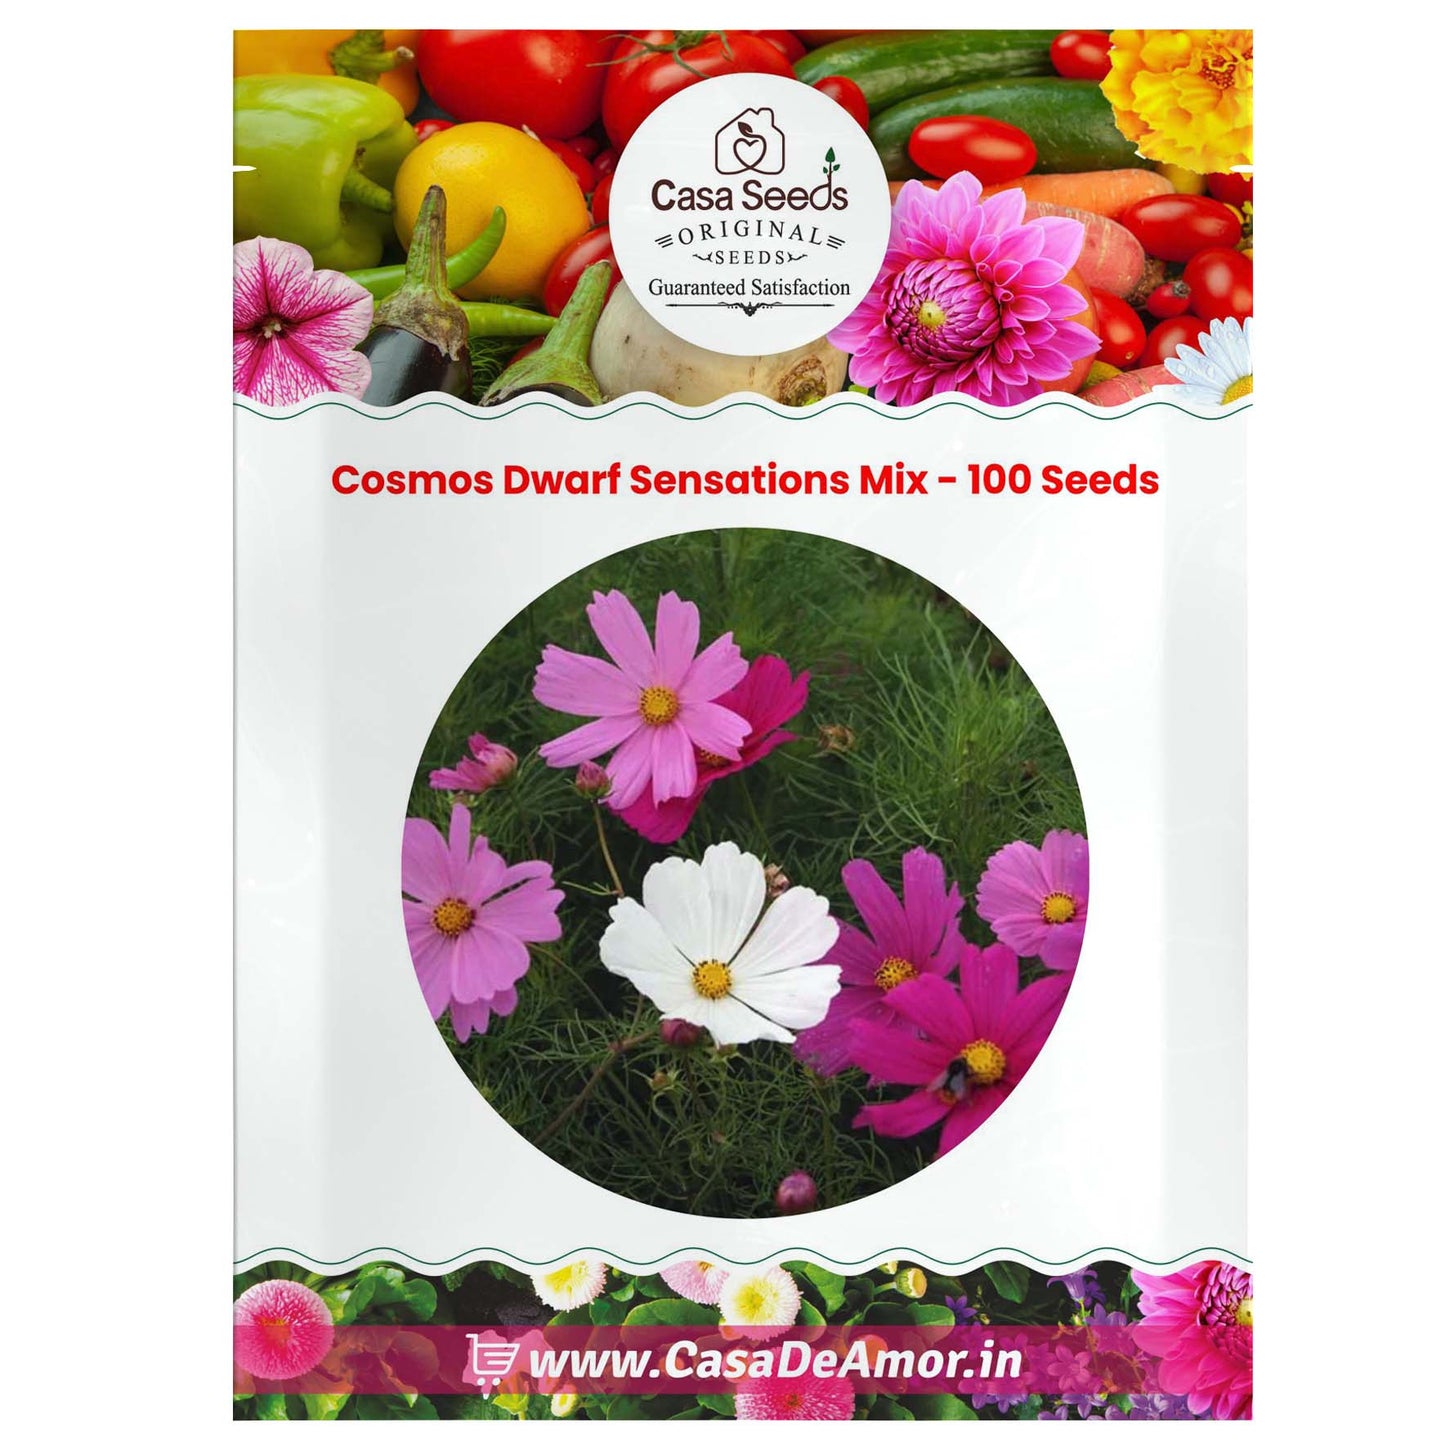 Cosmos Dwarf Sensations Mix - 100 Seeds